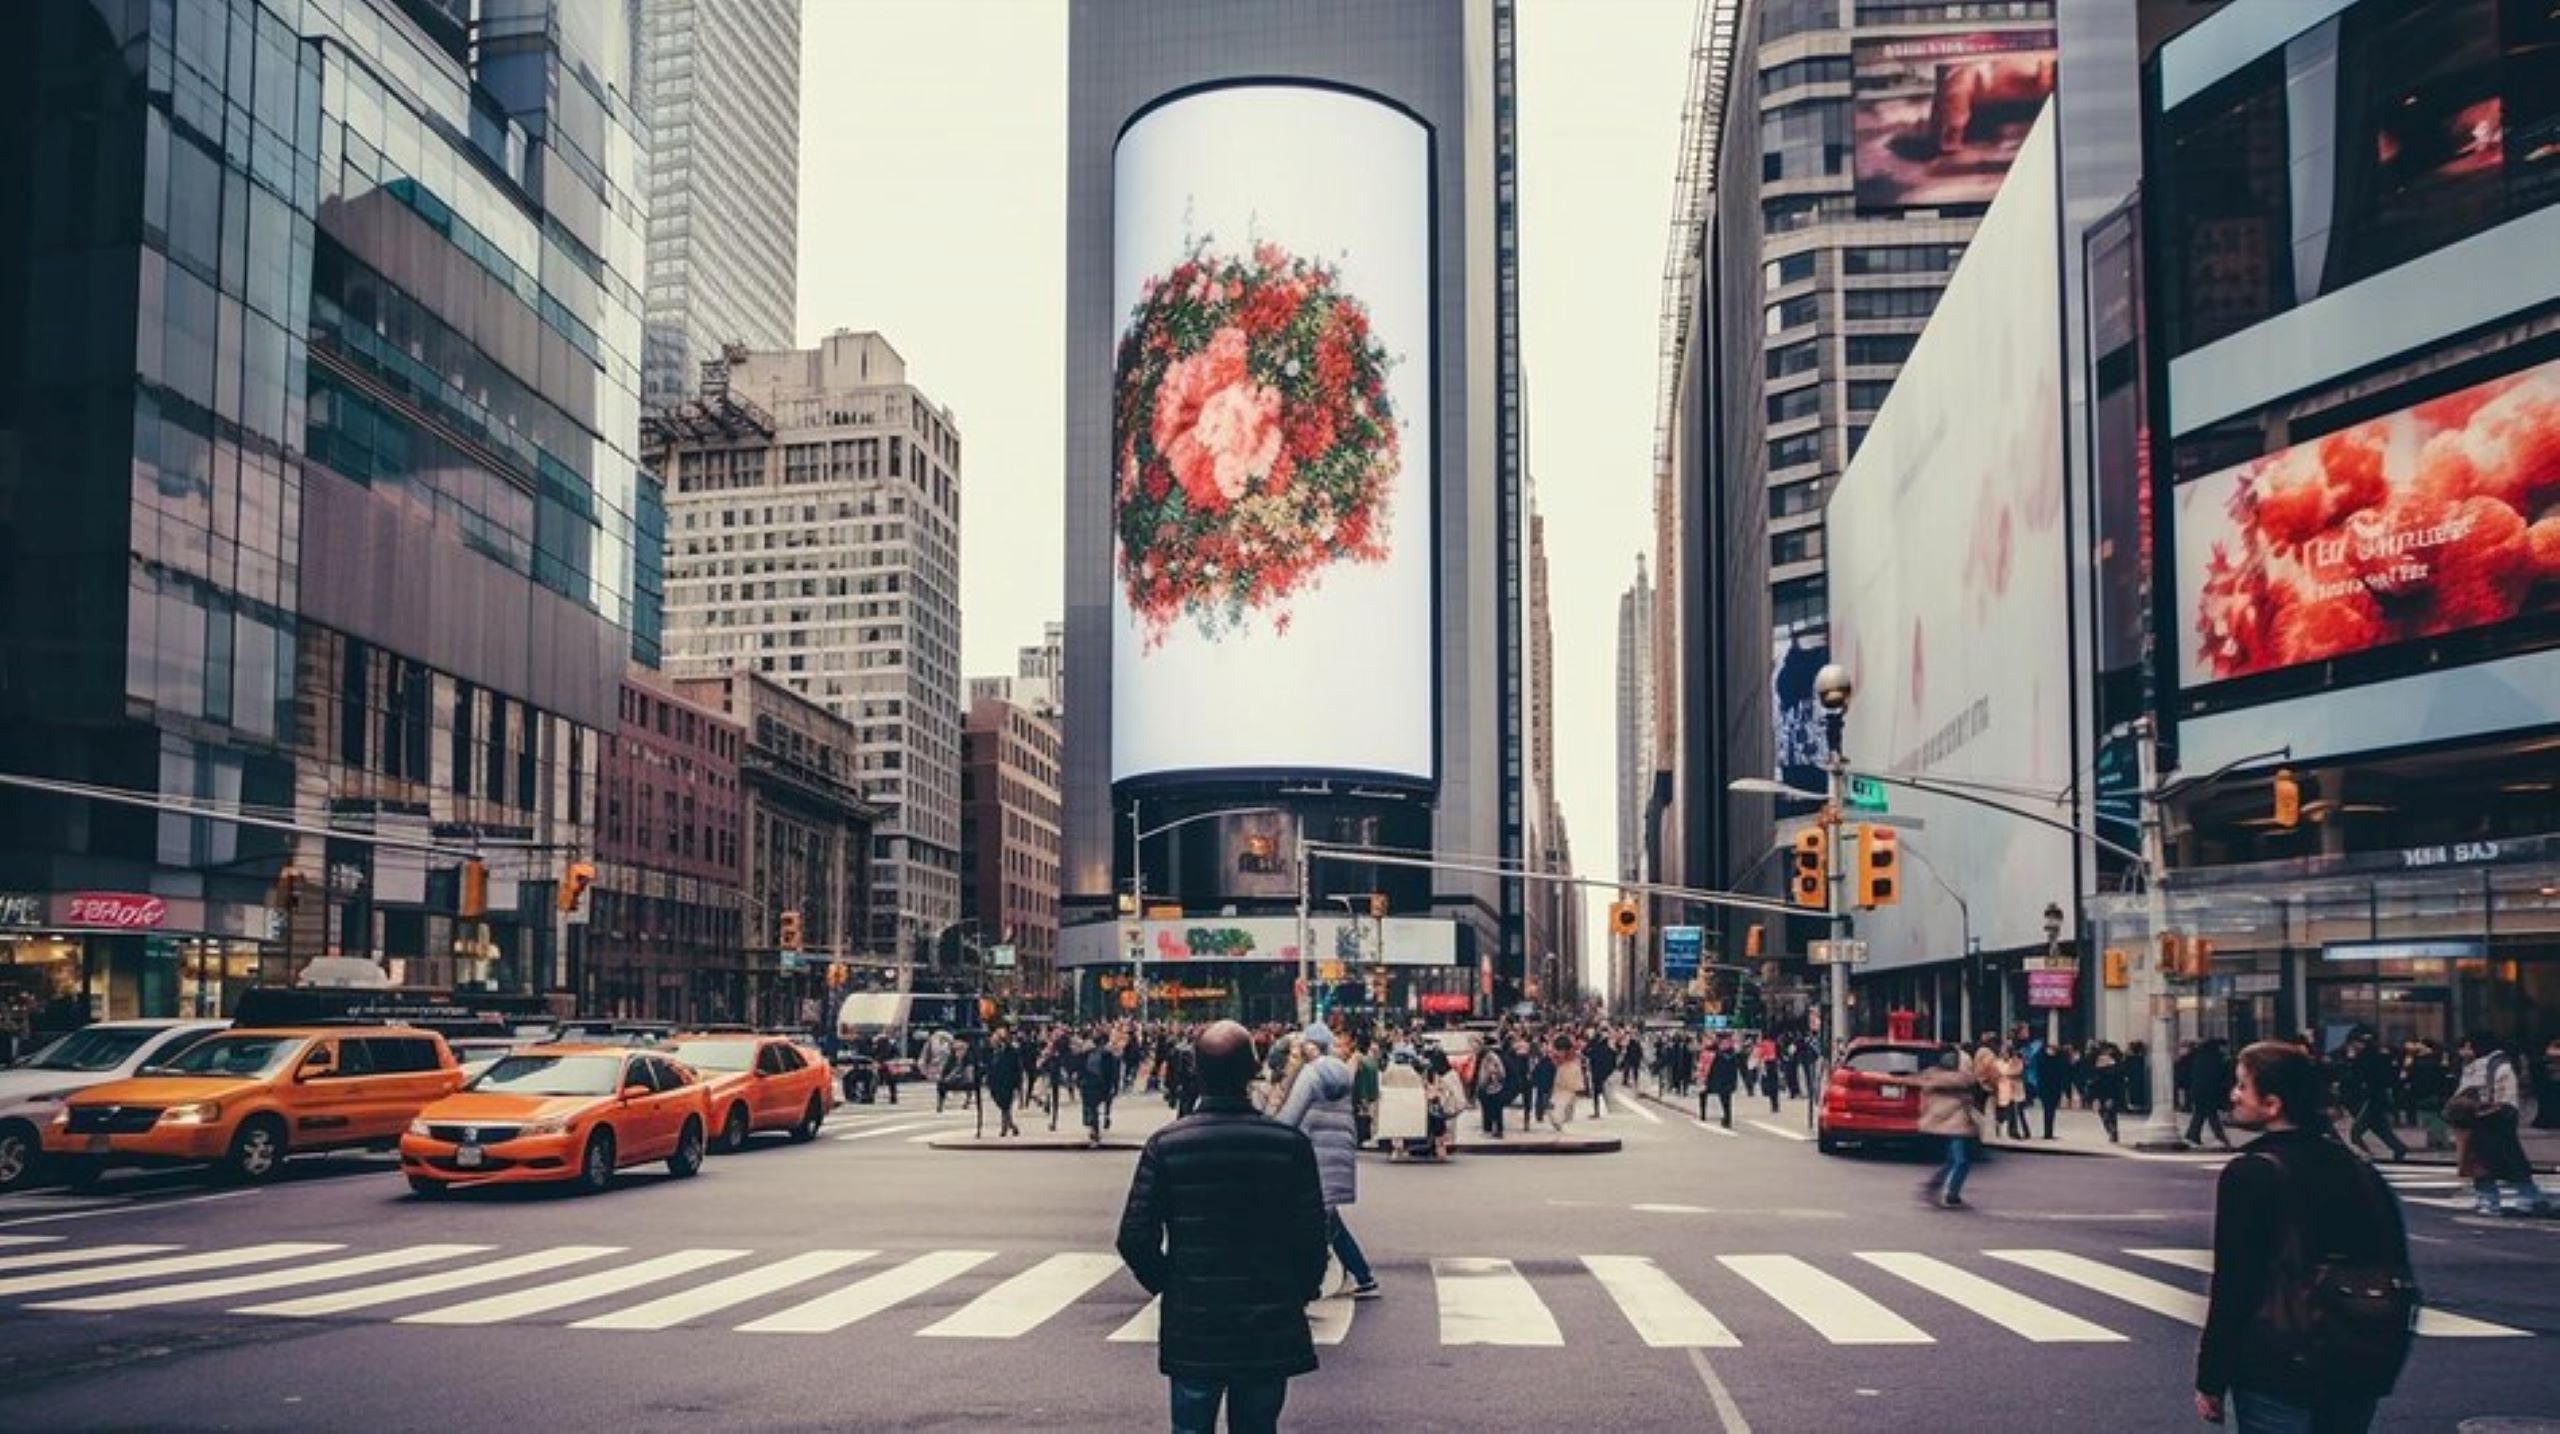 Você já imaginou a possibilidade de anunciar sua empresa na Times Square, o famoso epicentro dos outdoors e da publicidade em Nova York, por apenas $40? Parece inacreditável, mas graças à inovação tecnológica e ao programa PixelStar, essa fantasia agora se tornou uma realidade acessível.